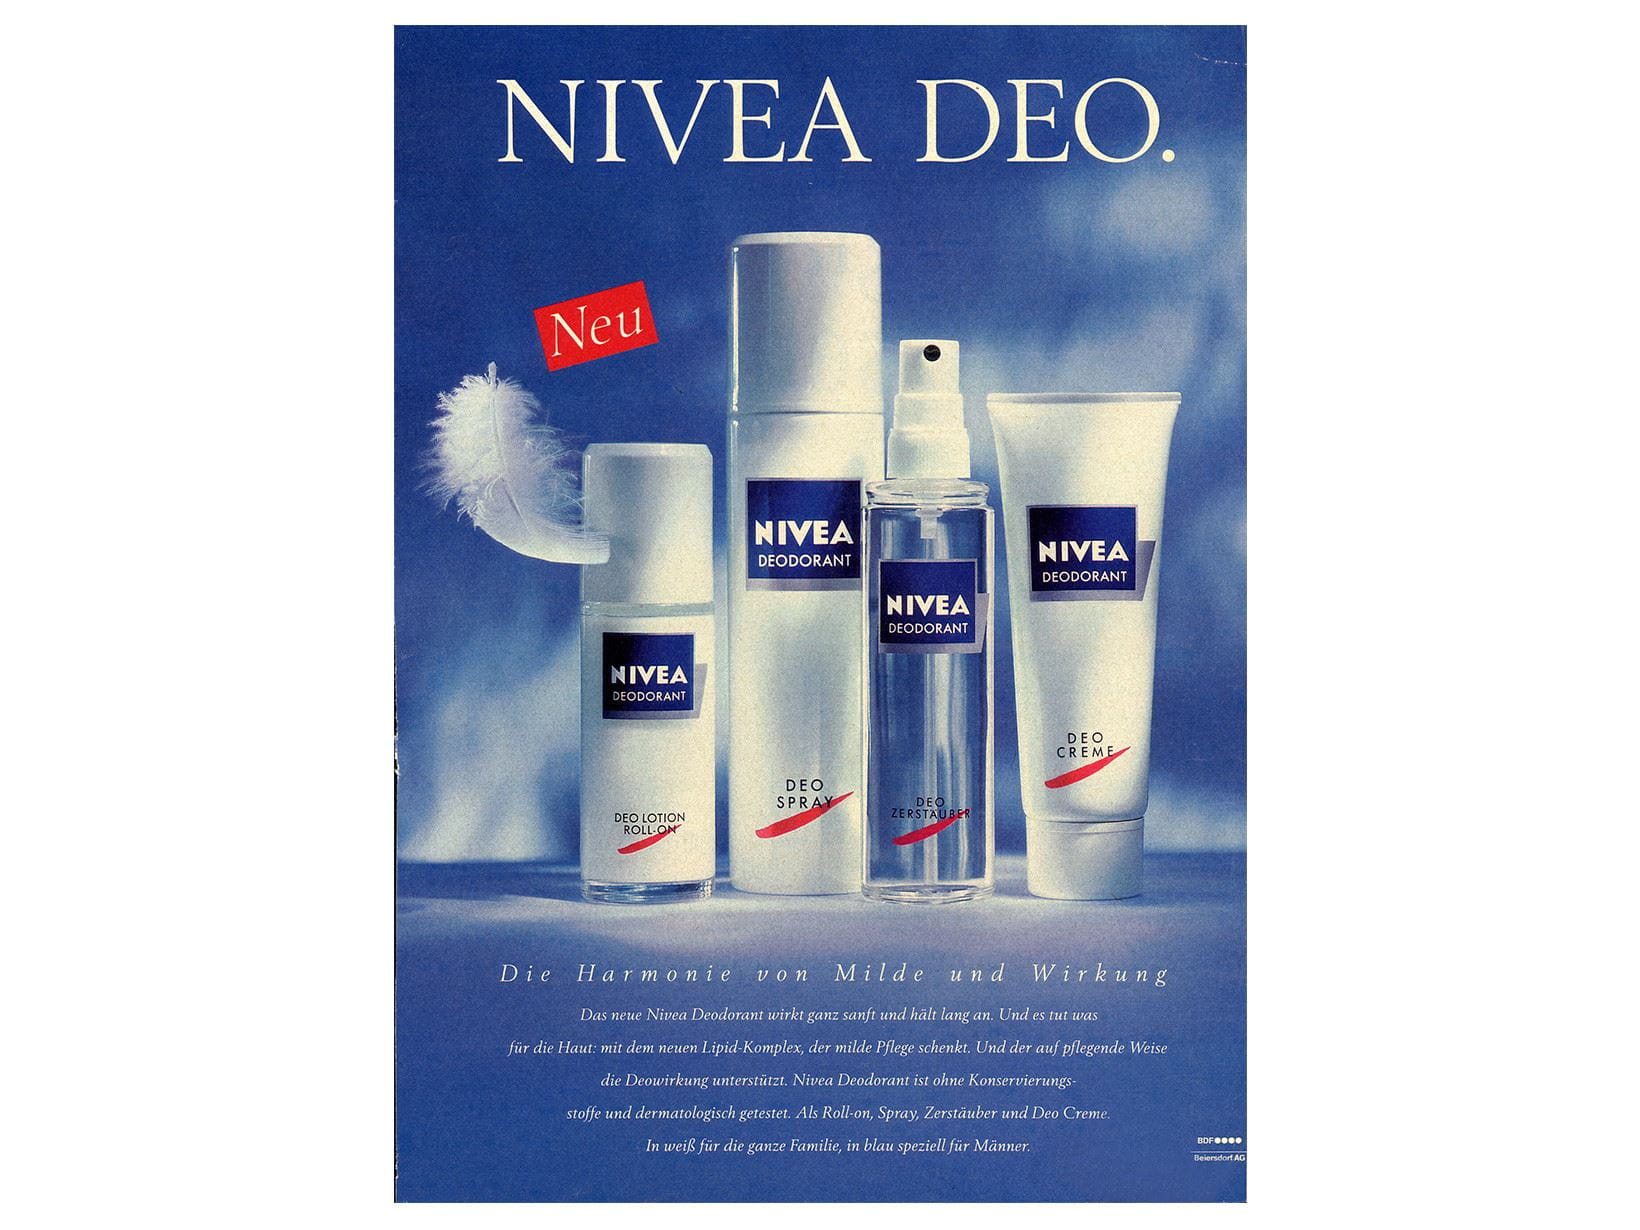 Рекламная кампания в честь выпуска дезодоранта NIVEA, 1991 г.